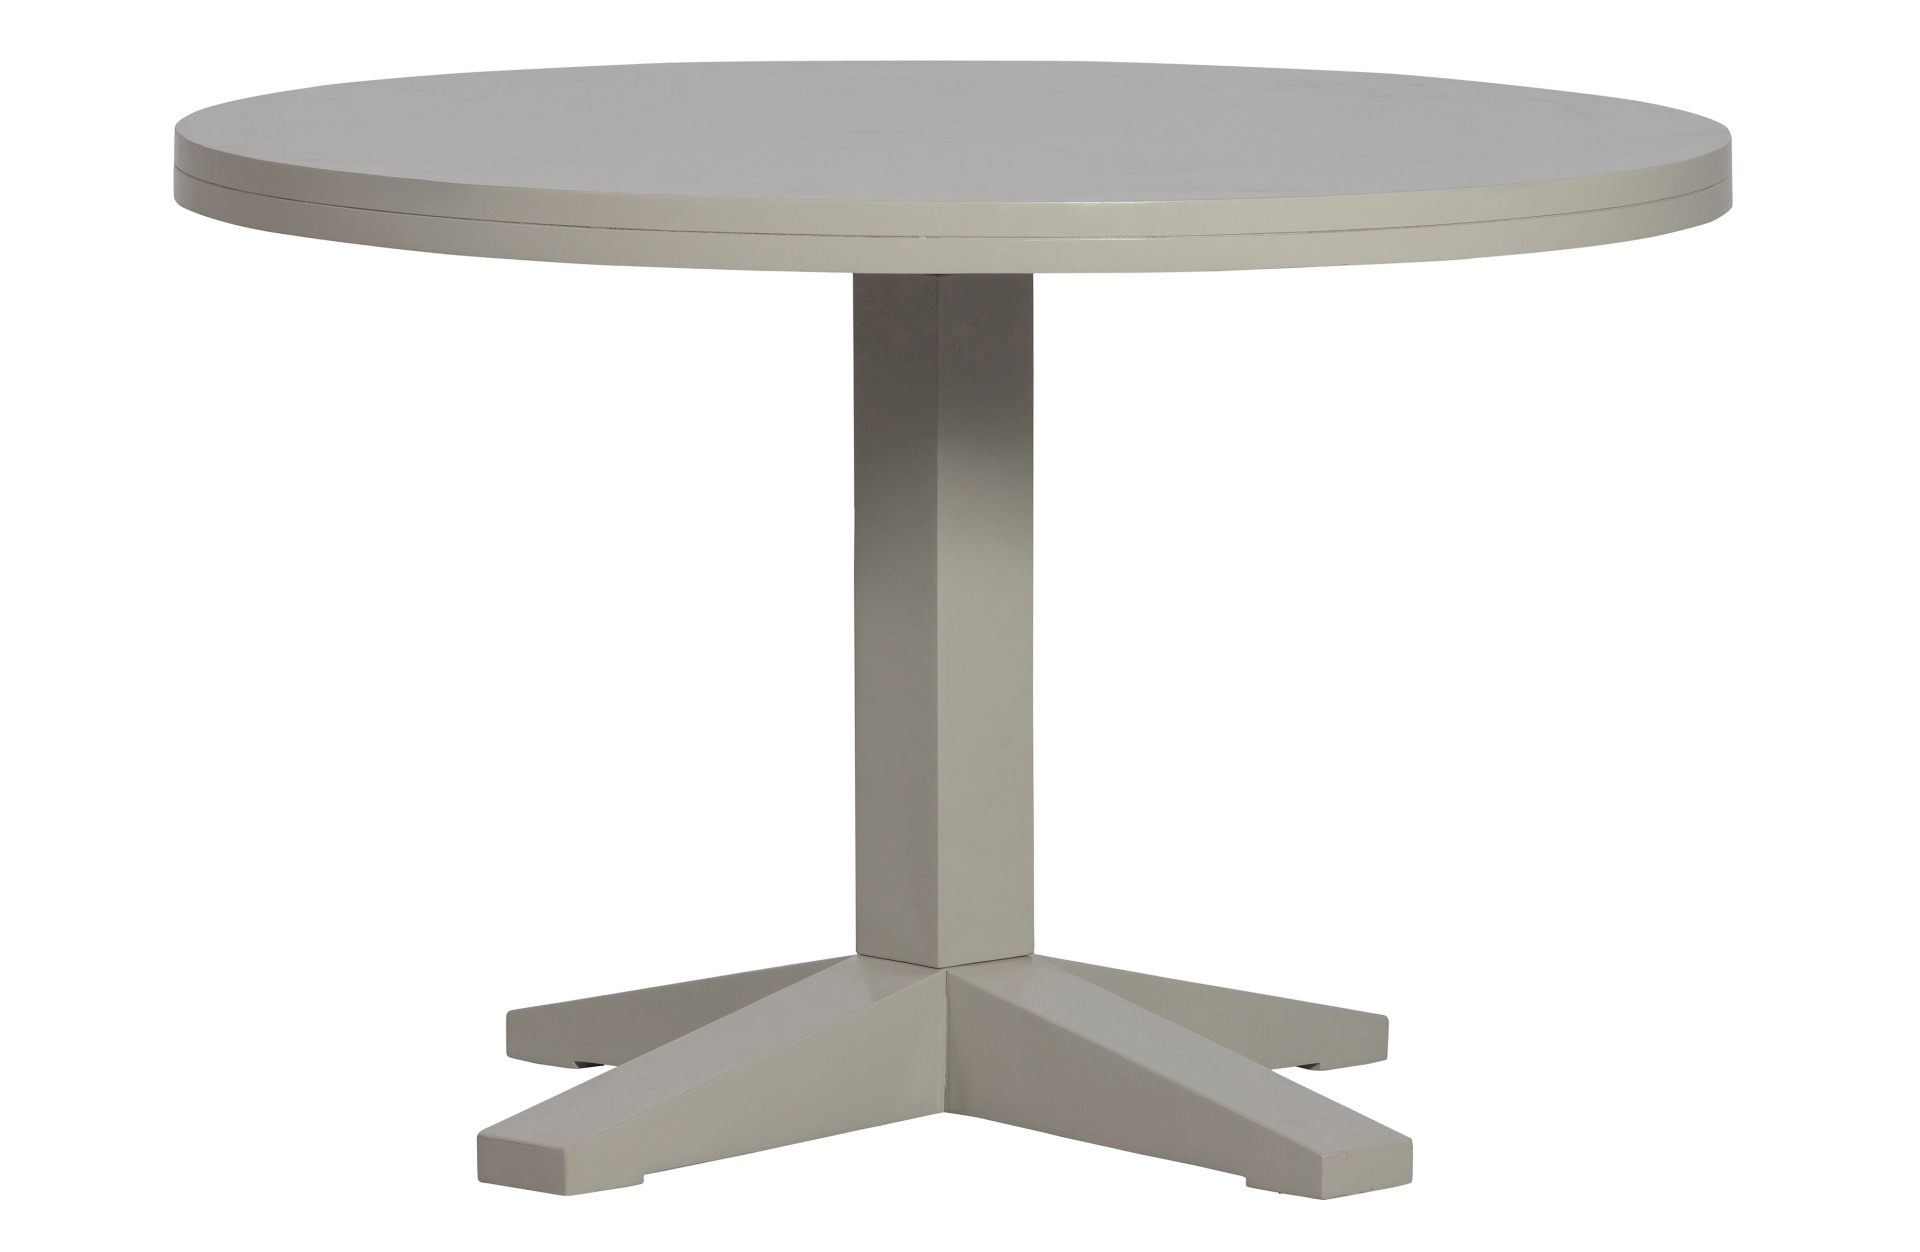 Der Esstisch Deck besitzt eine runde Form. Gefertigt wurde der Tisch aus Mangoholz und hat einen grauen Farbton.